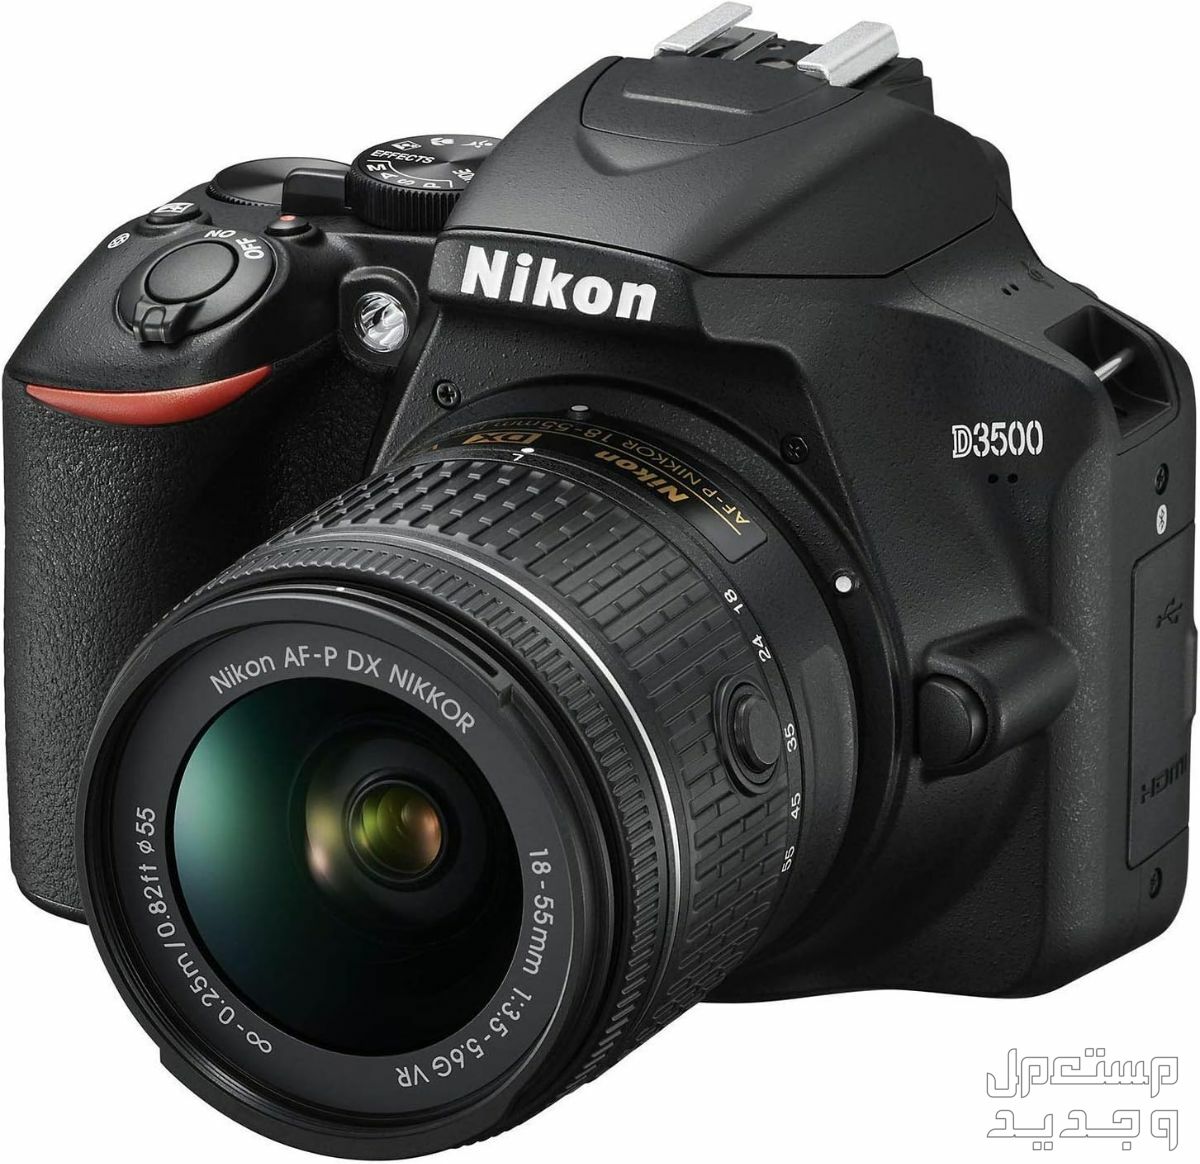 10 كاميرات تصوير ماركات عالمية بأسعار رخيصة في فلسطين مميزات كاميرا Nikon D3500